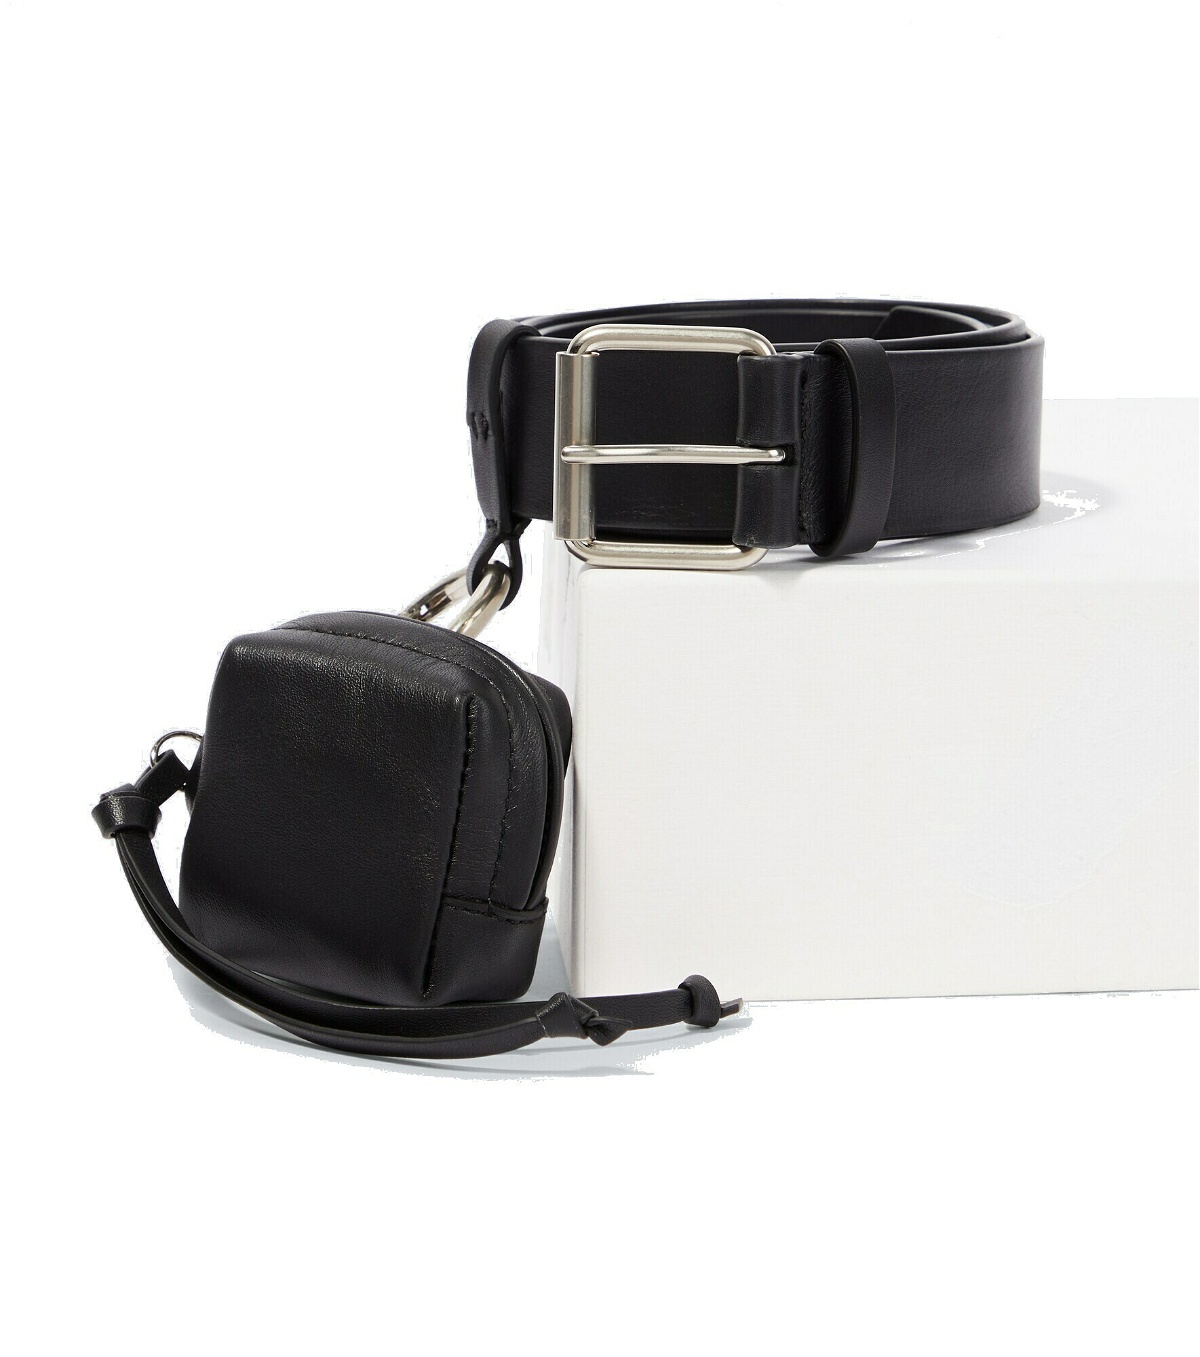 Dries Van Noten - Leather belt and bag Dries Van Noten